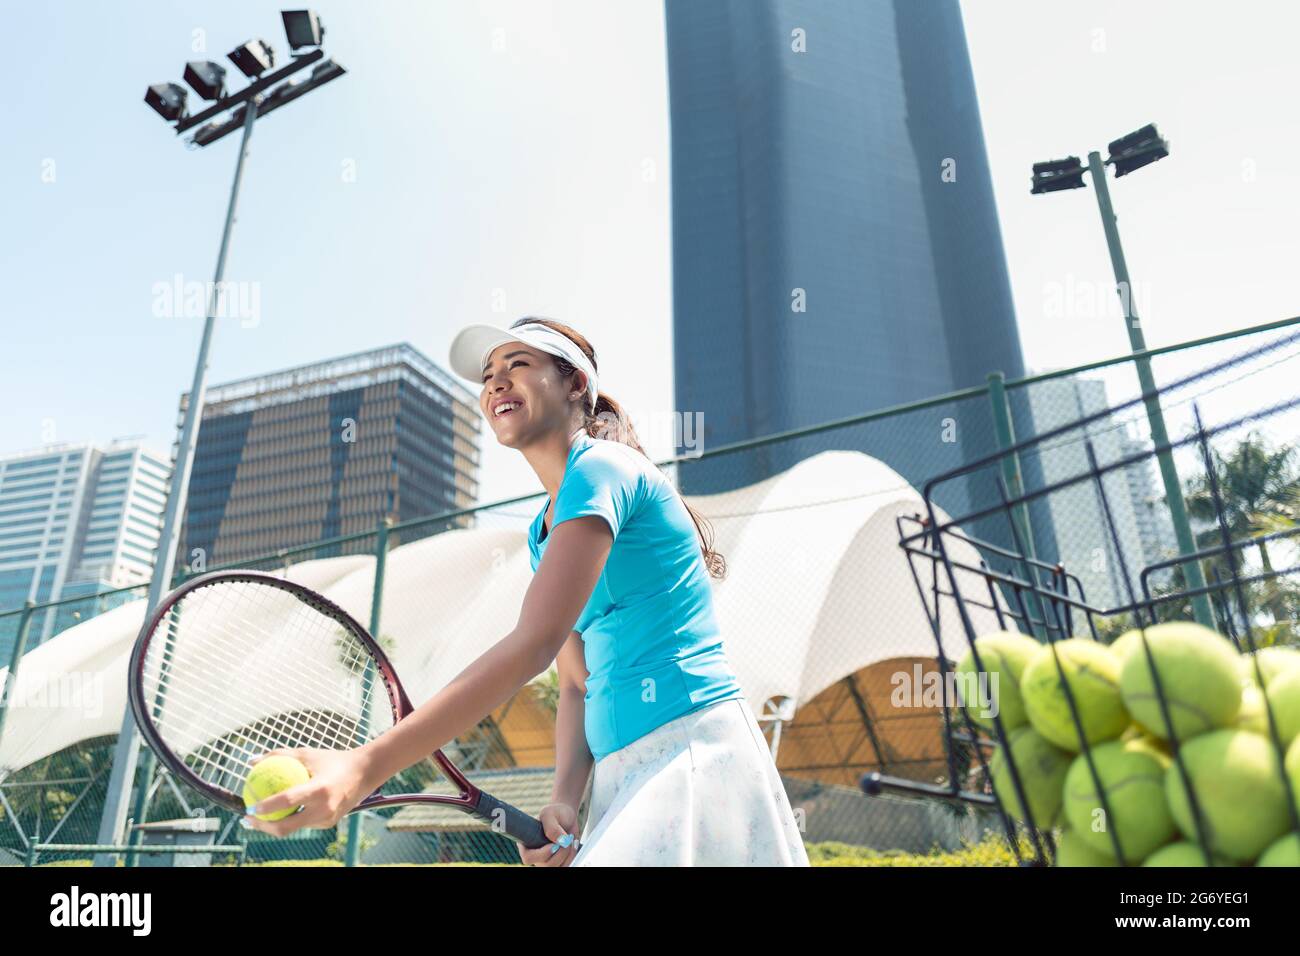 Vue en contre-plongée une belle femme prête à servir tout en jouant au tennis dans un lieu avec des équipements modernes Banque D'Images